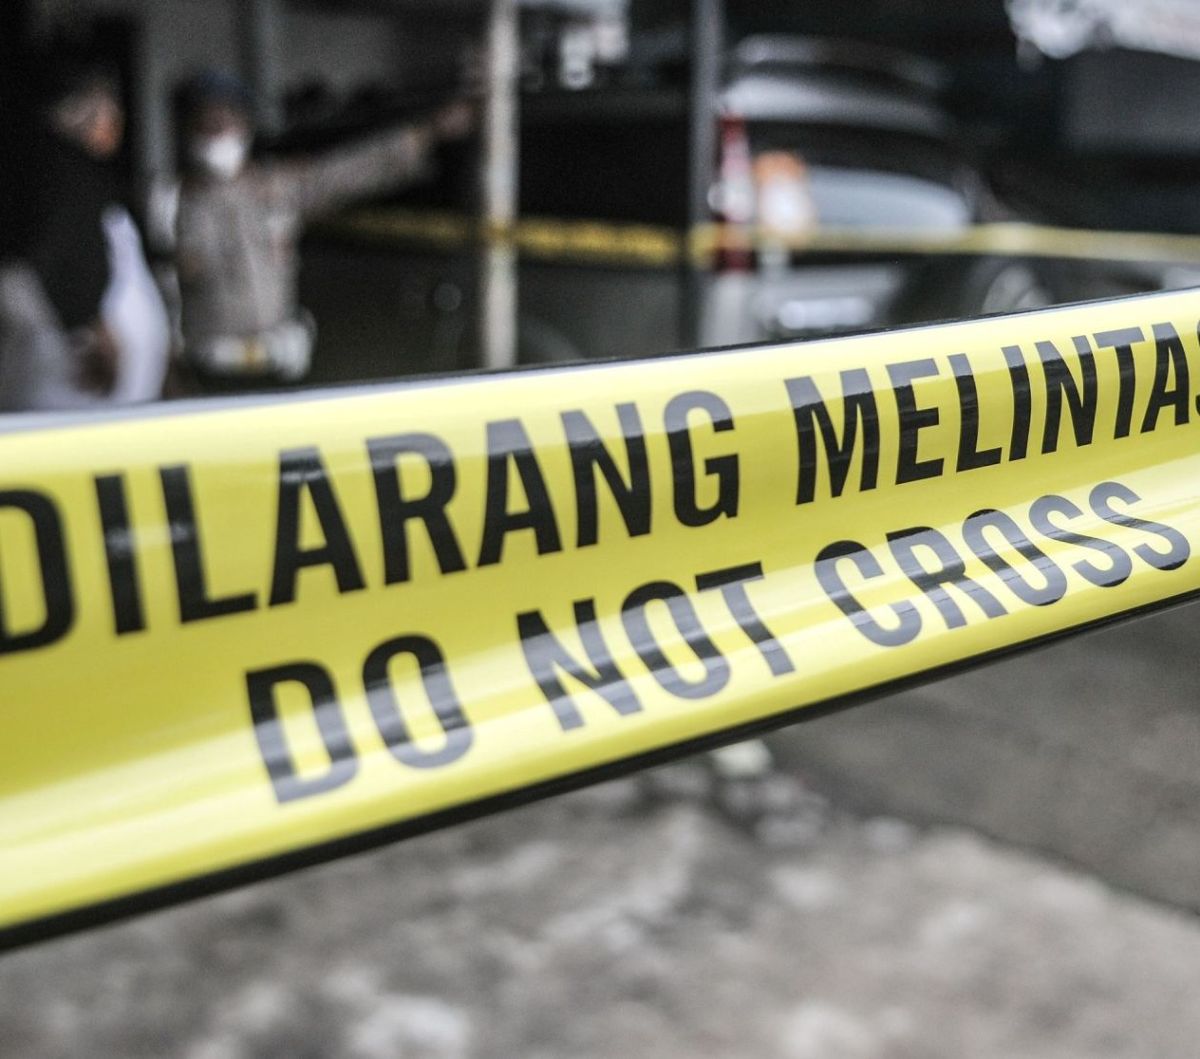 Cerita Pelarian Pembunuh Ketua Mapala Lubuklinggau, Gagal ke Cianjur hingga jadi Pelayan Pecel Lele